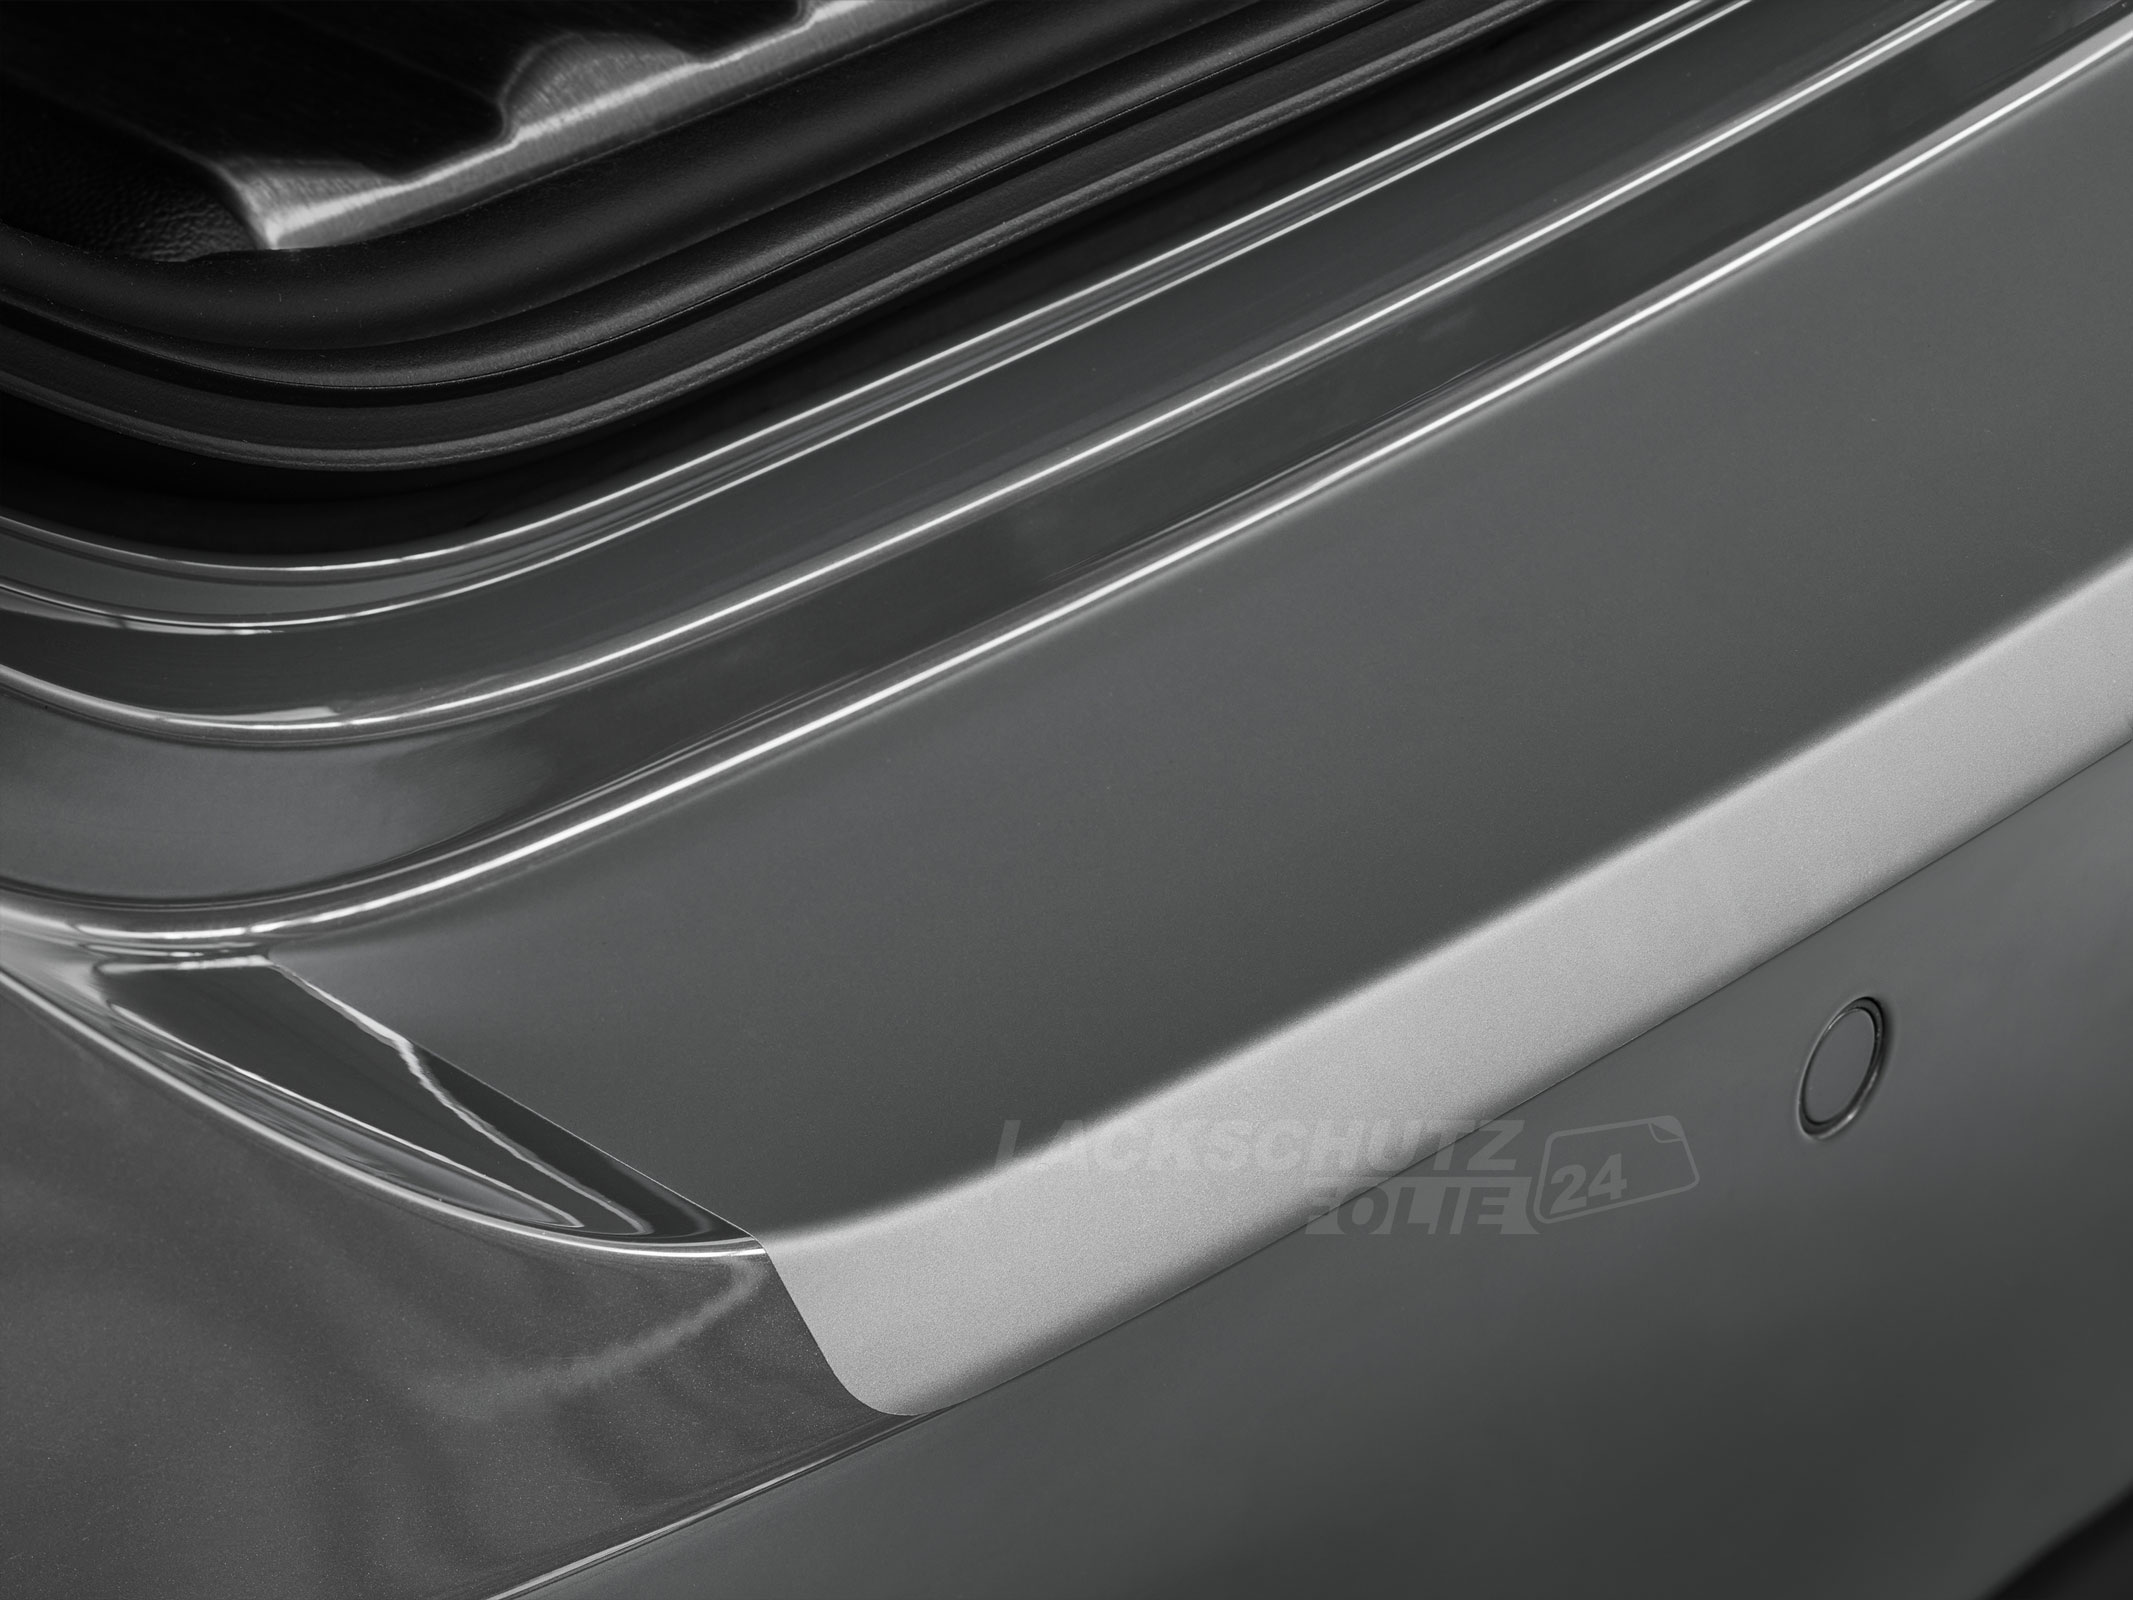 Ladekantenschutzfolie - Transparent Glatt MATT 110 µm stark  für Audi A4 Avant (Kombi) B9, Typ 8W, ab BJ 11/2015 + Facelift